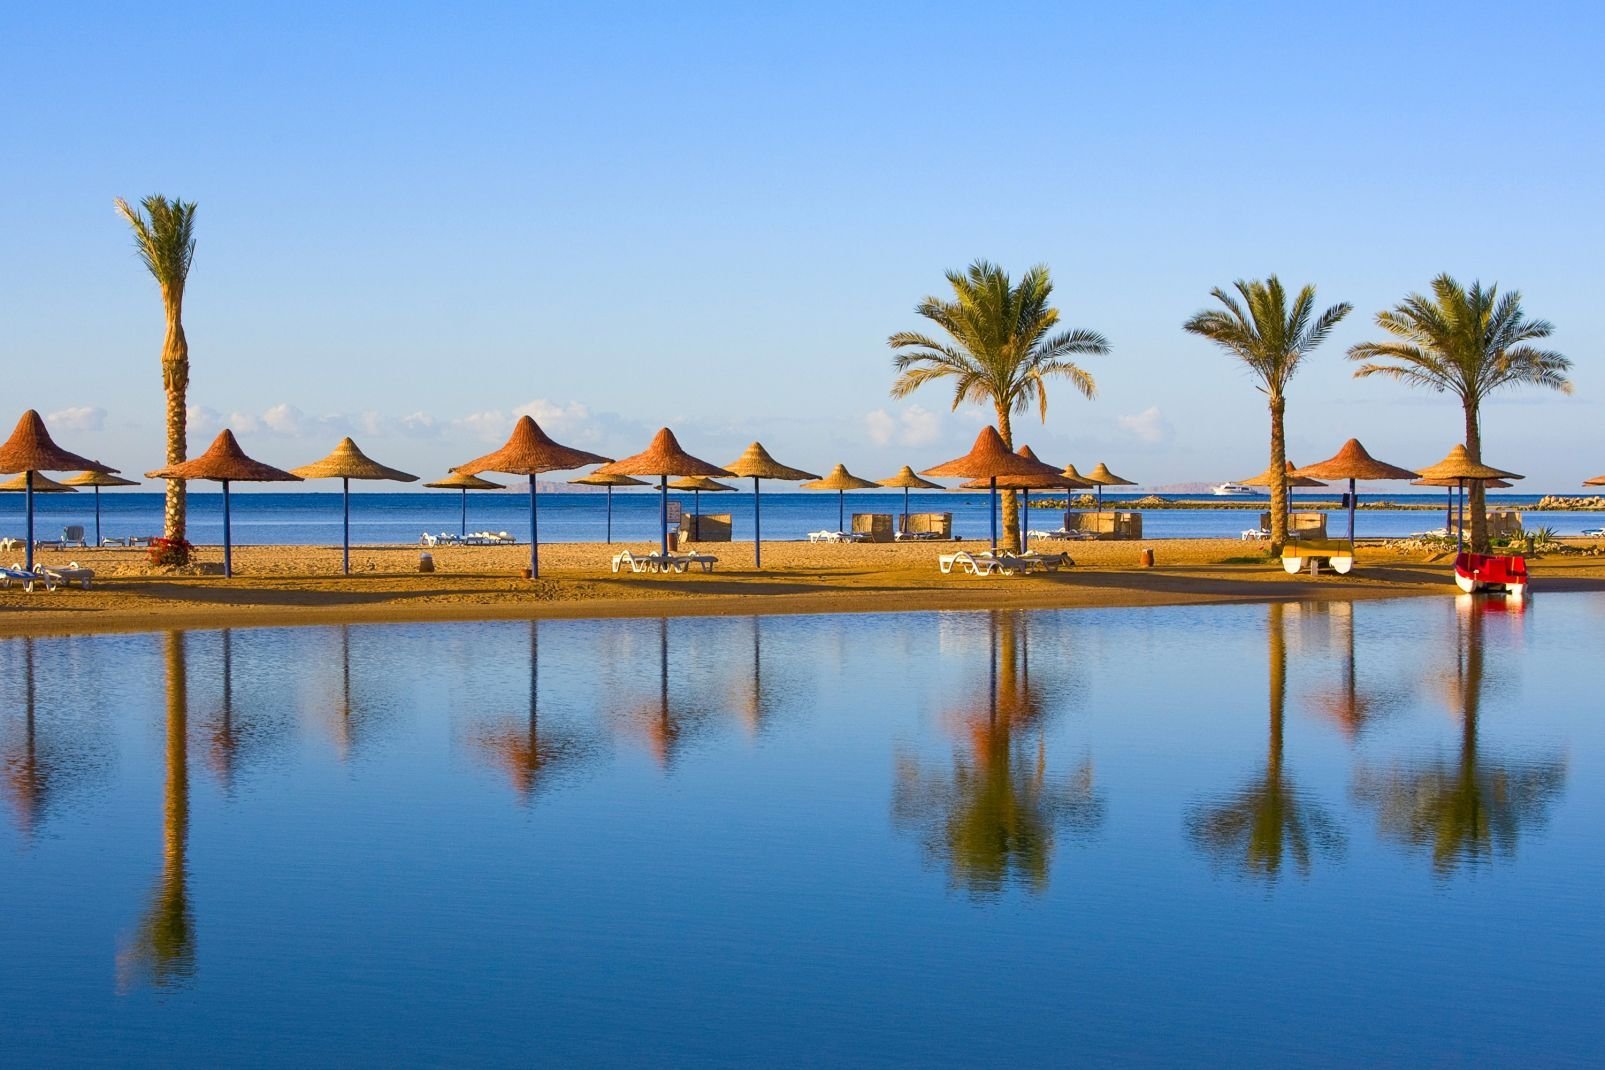 Marsa Alam, c'est l'appel du grand sud à 800 km du Caire. Ce coin de désert bénéficie depuis 2001 d'un aéroport international pour desservir de nouvelles zones hôtelières en développement le long de la mer Rouge et de ses sublimes fonds marins. Mais si la région change, on est encore loin du bétonnage frénétique d'Hurghada ou de Sharm-El-Sheikh. La principale ville des environs est El-Quseir (ou Al-Qusayr ...